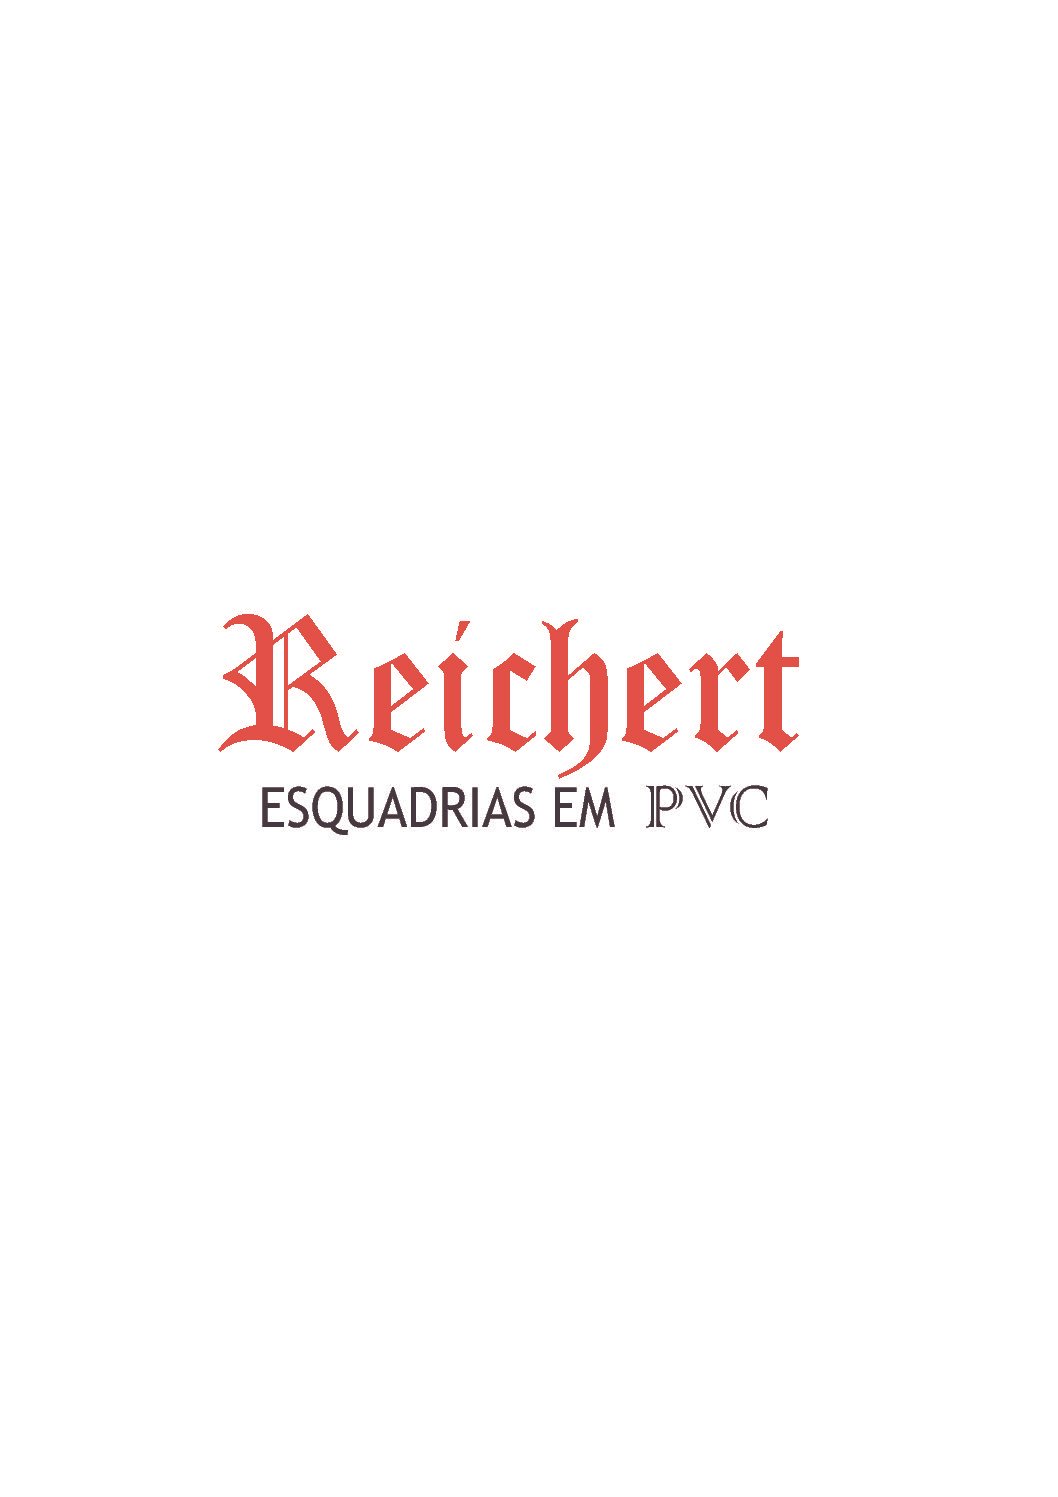 Polos e camisetas com bordado ponto a ponto para a empresa Reichert Esquadrias em PVC, da cidade de Selbach/RS.